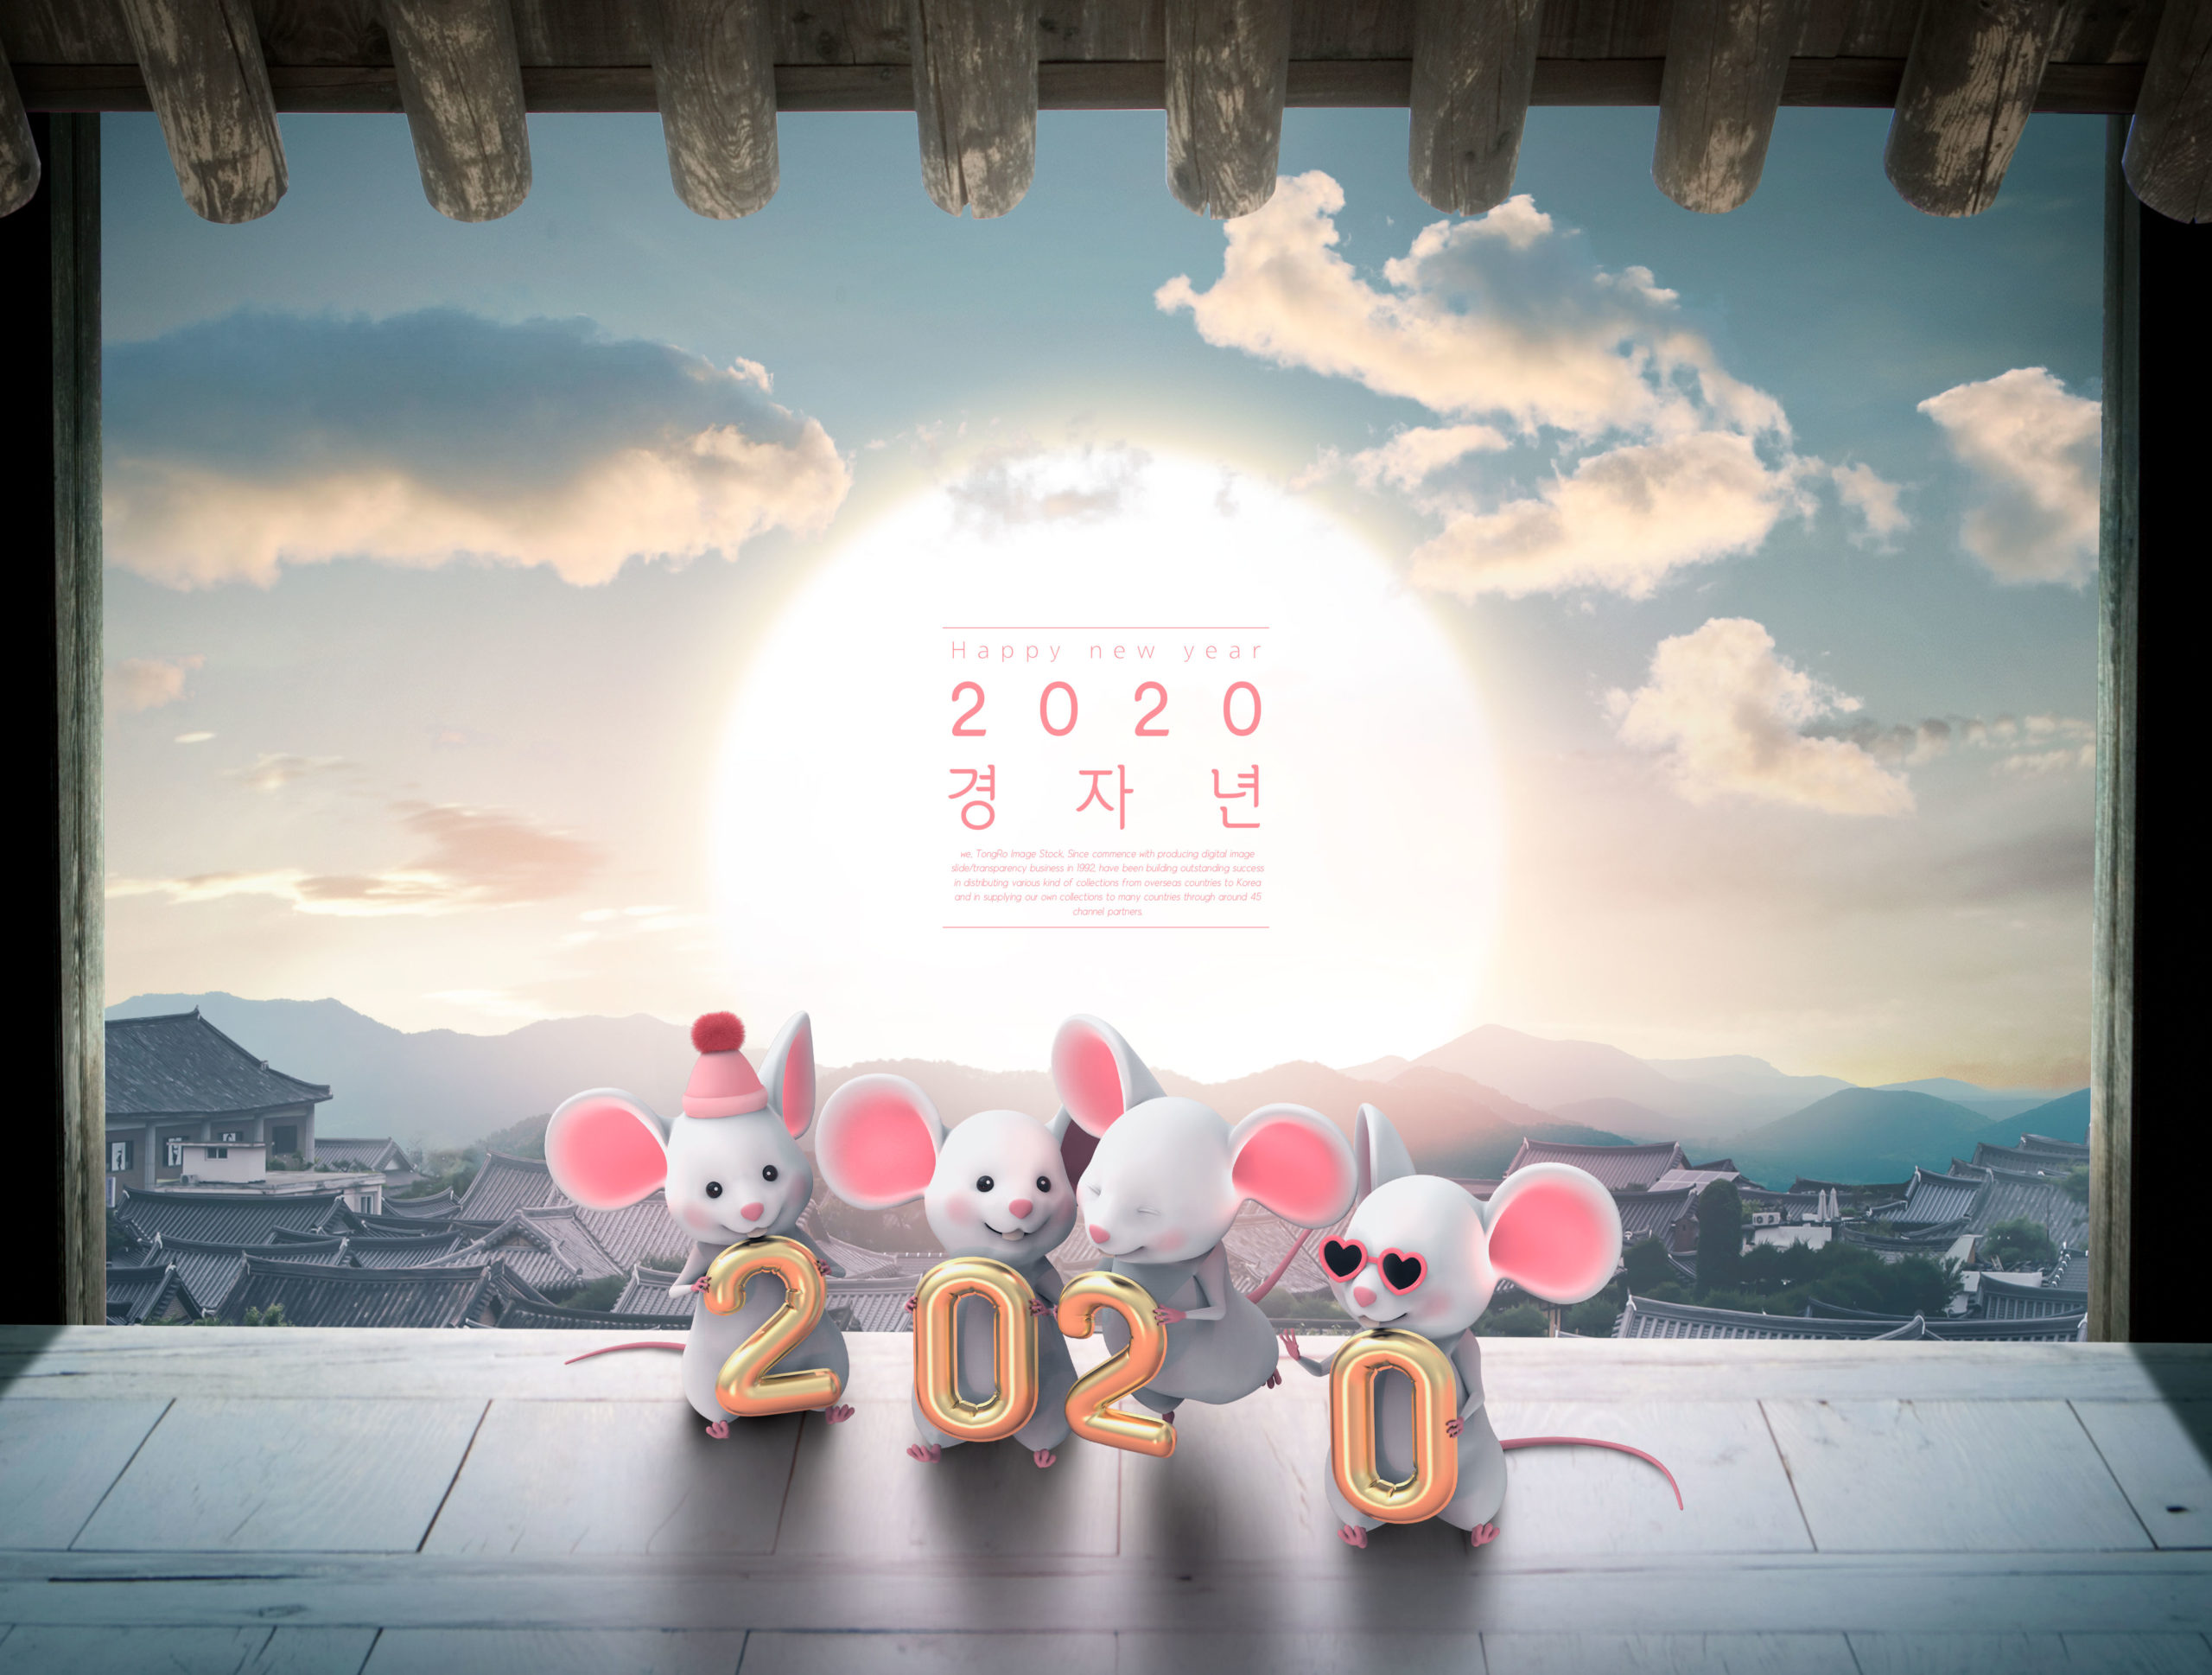 2020鼠年新年主题海报PSD素材素材库精选素材插图